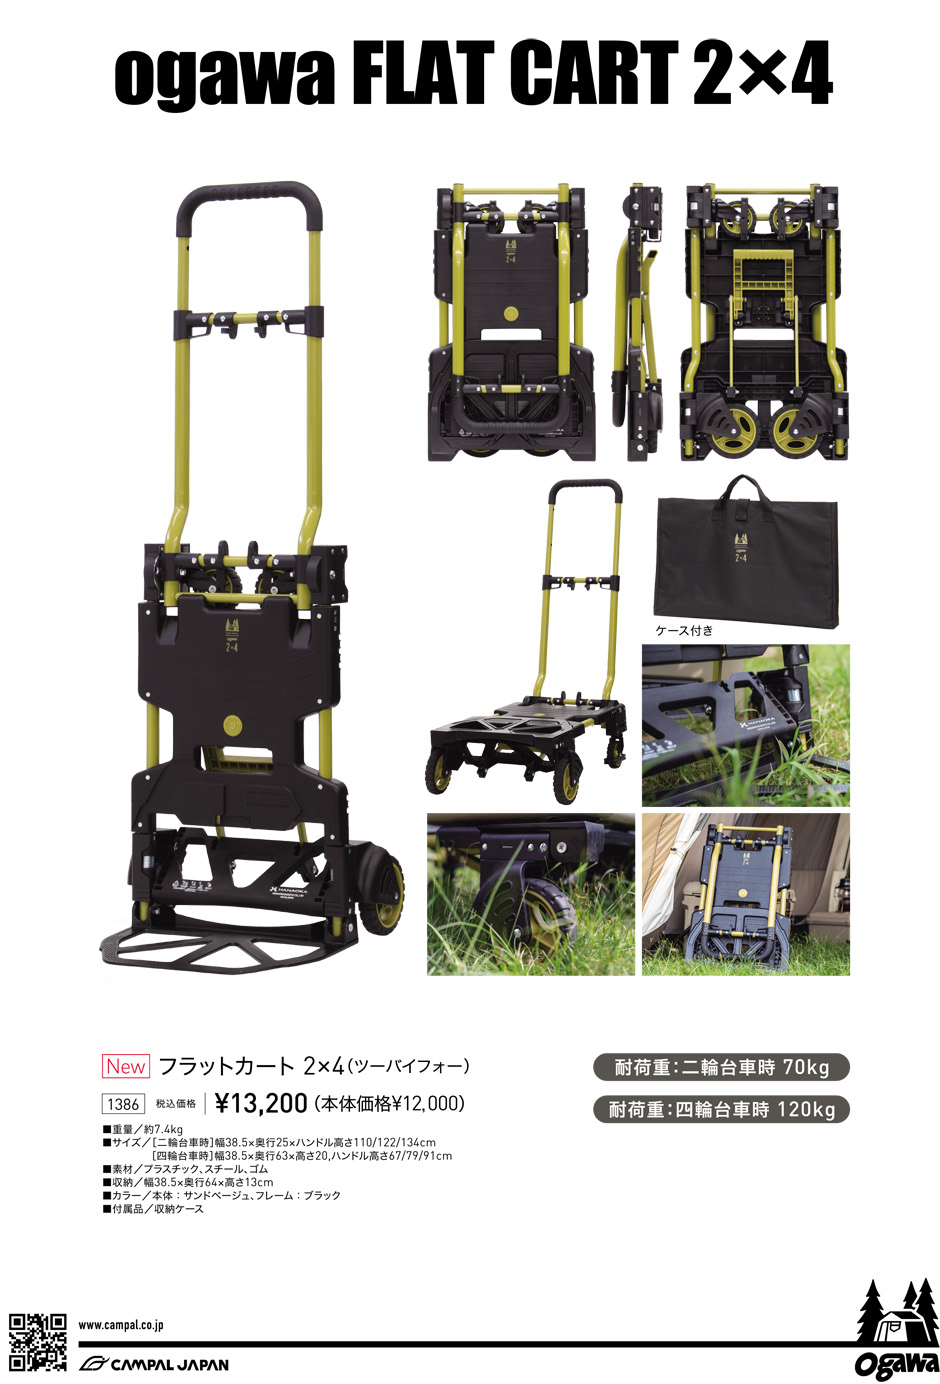 新製品】ogawa フラットカート 2×4発売のお知らせ | News | ogawa 